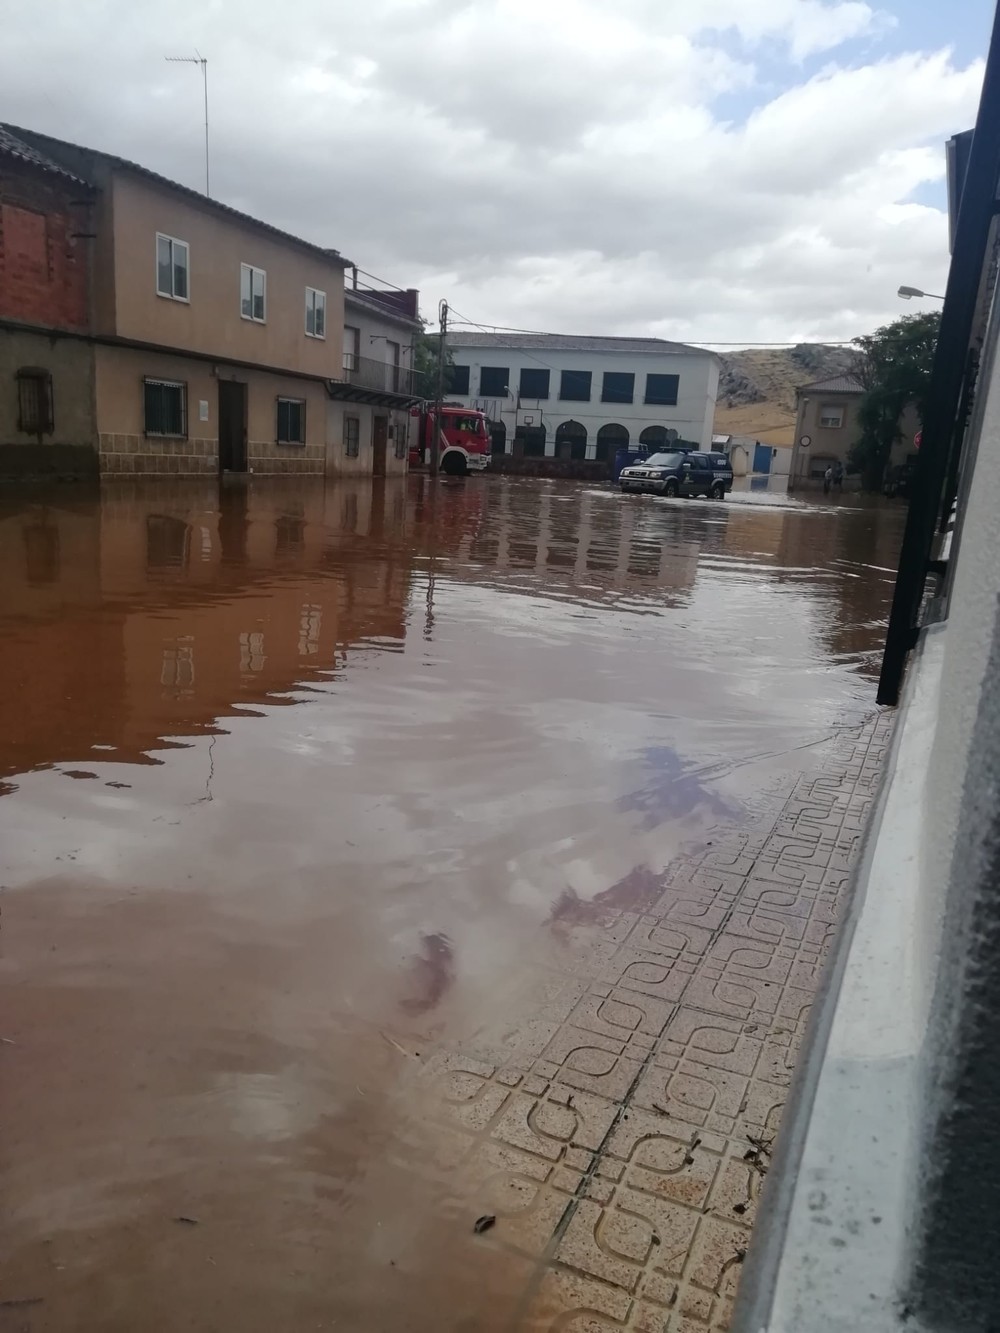 El PSOE lamenta las inundaciones ocurridas en Granátula